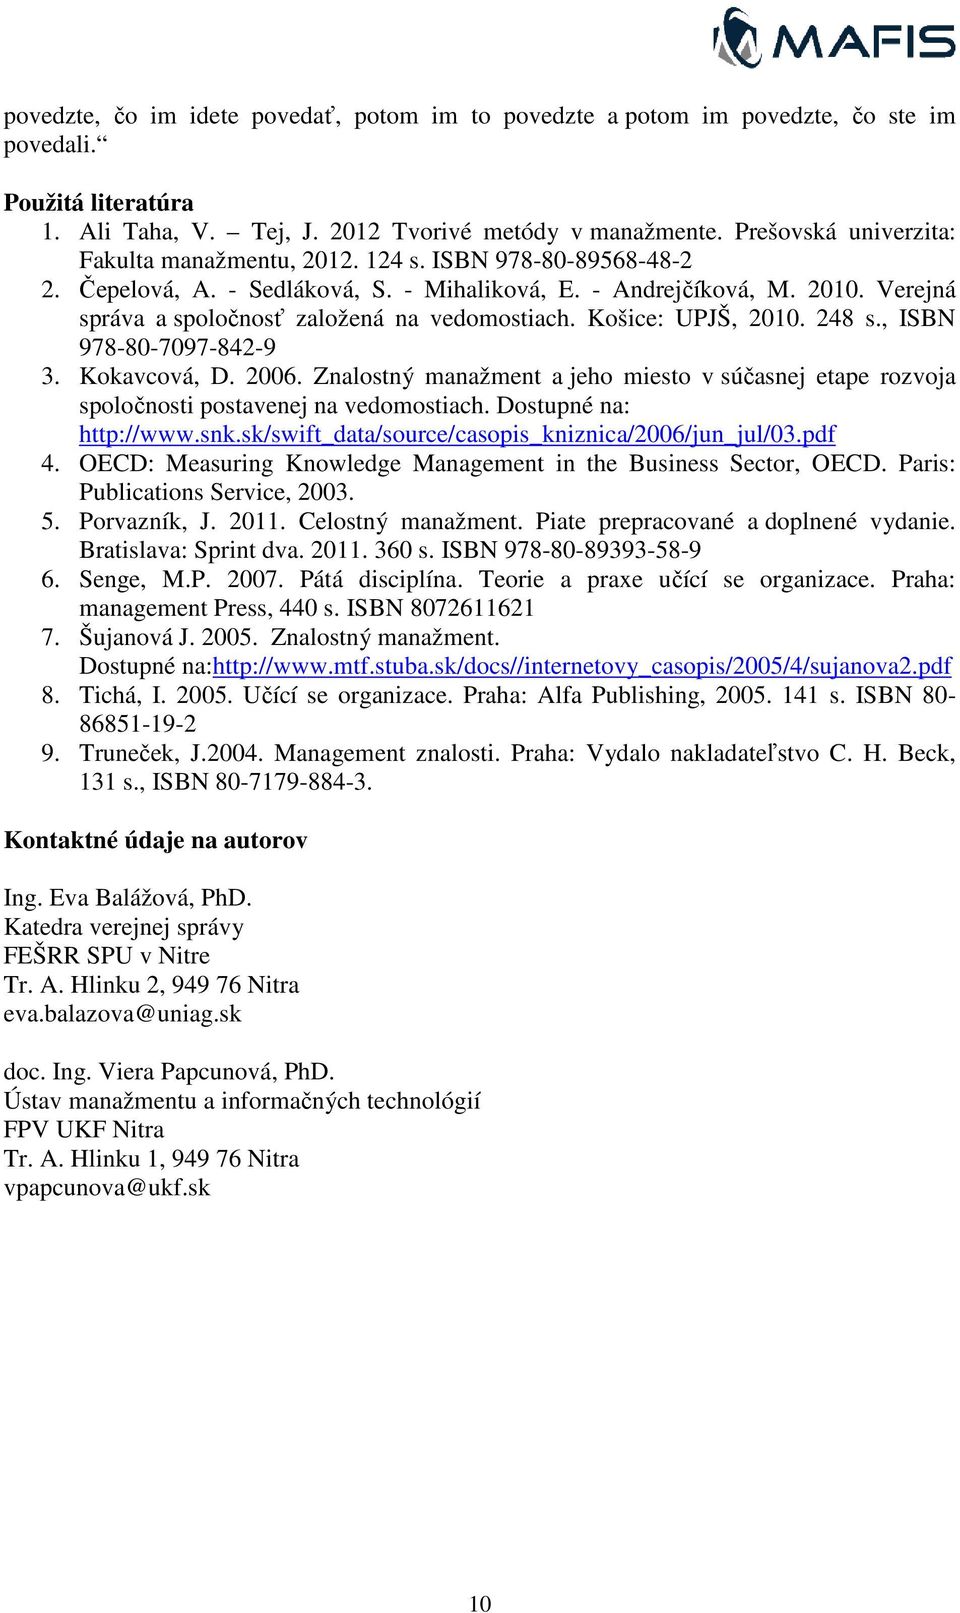 Verejná správa a spoločnosť ť založená na vedomostiach. Košice: UPJŠ, 2010. 248 s., ISBN 978-80-7097-842-9 3. Kokavcová, D. 2006.